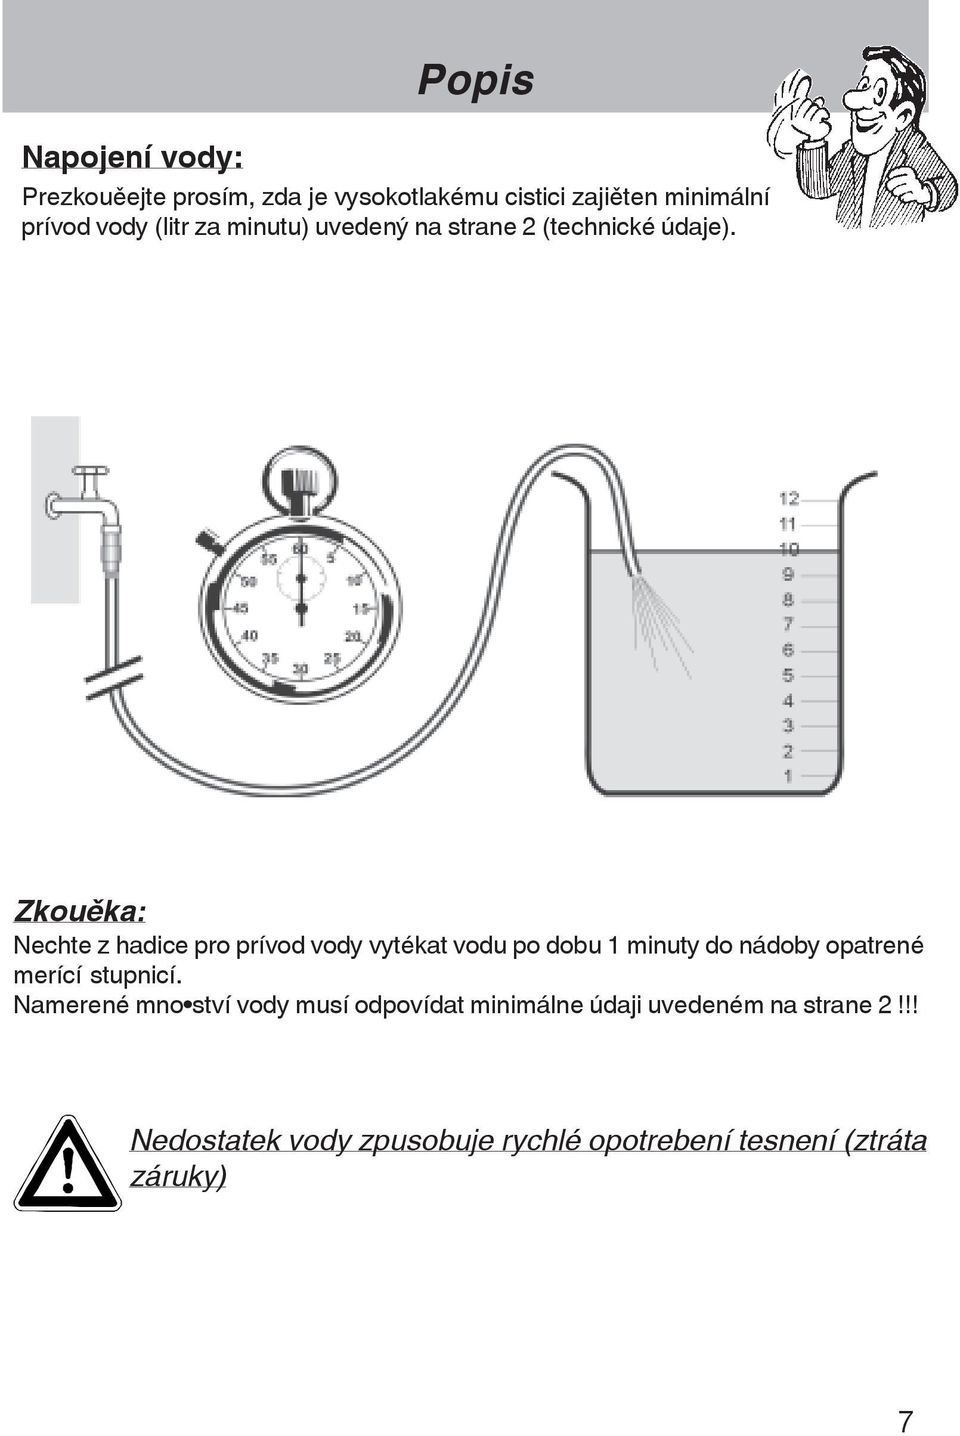 Zkouška: Nechte z hadice pro prívod vody vytékat vodu po dobu 1 minuty do nádoby opatrené merící